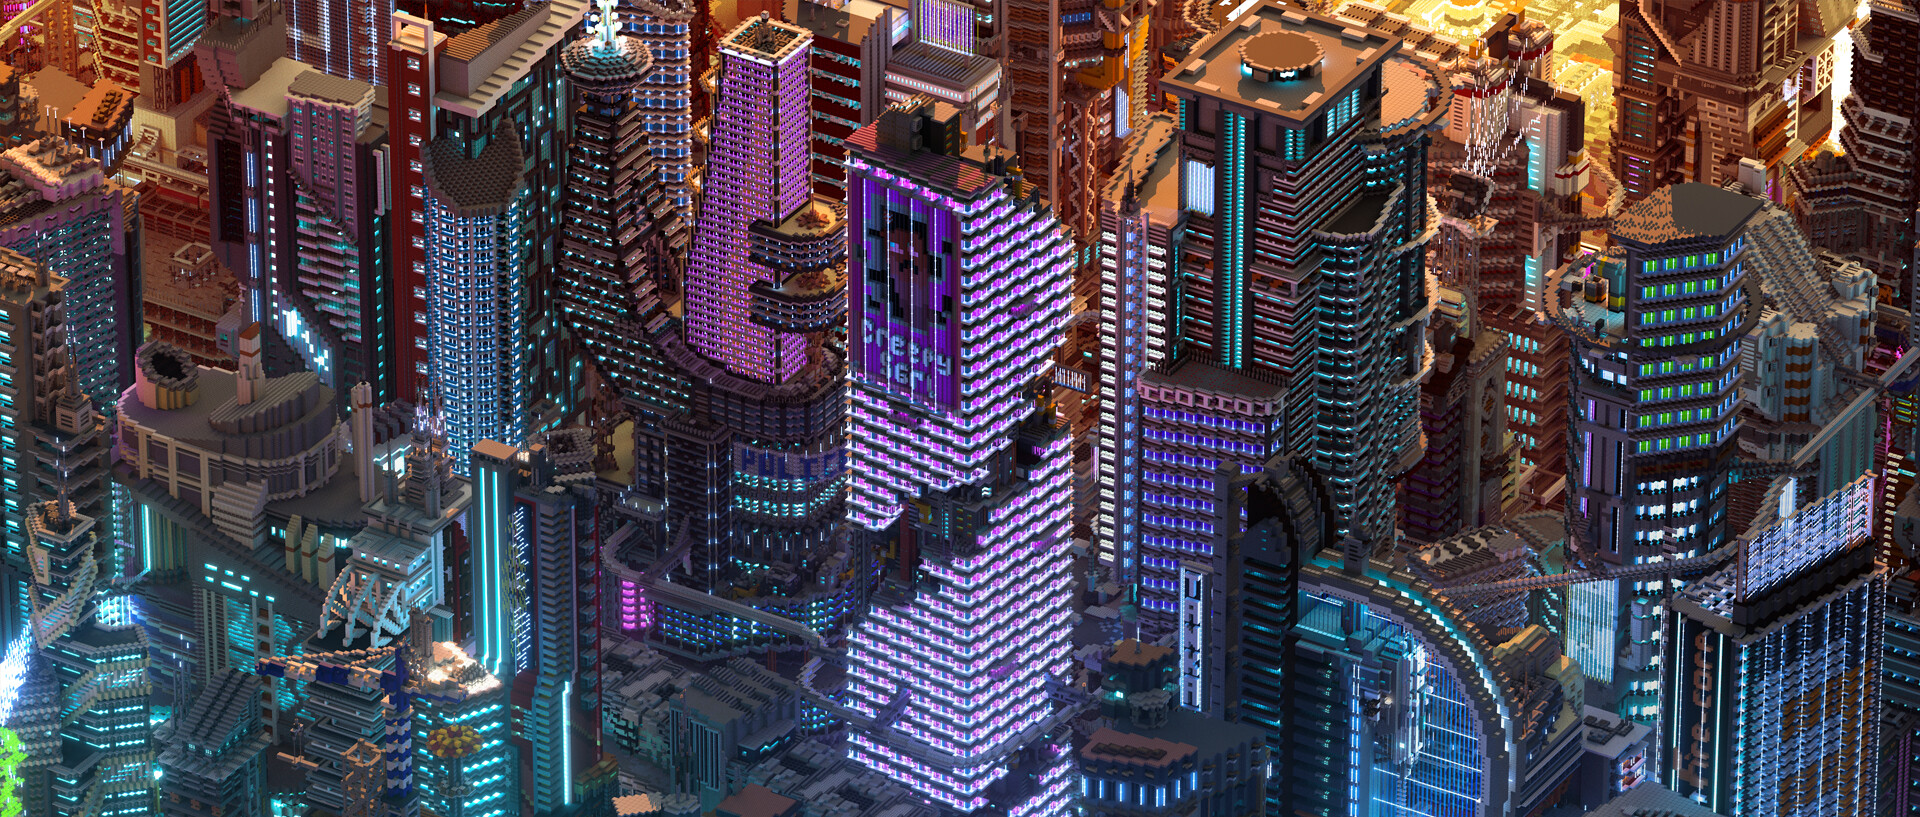 Cyberpunk night city minecraft фото 5